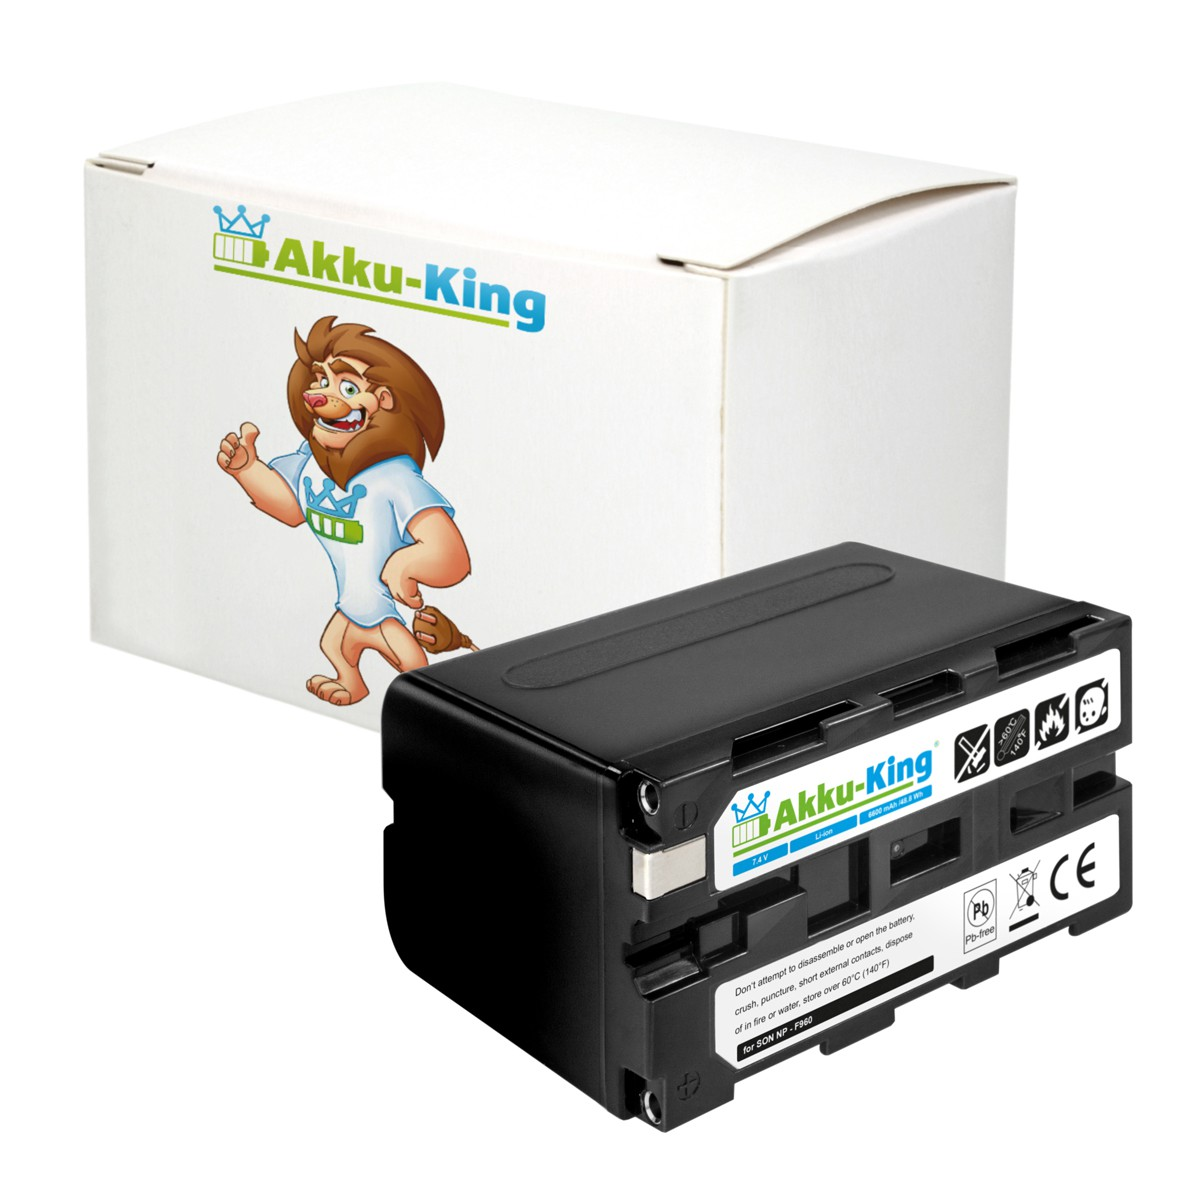 Volt, Akku NP-F960 7.4 AKKU-KING Sony Li-Ion kompatibel mit 6600mAh Kamera-Akku,